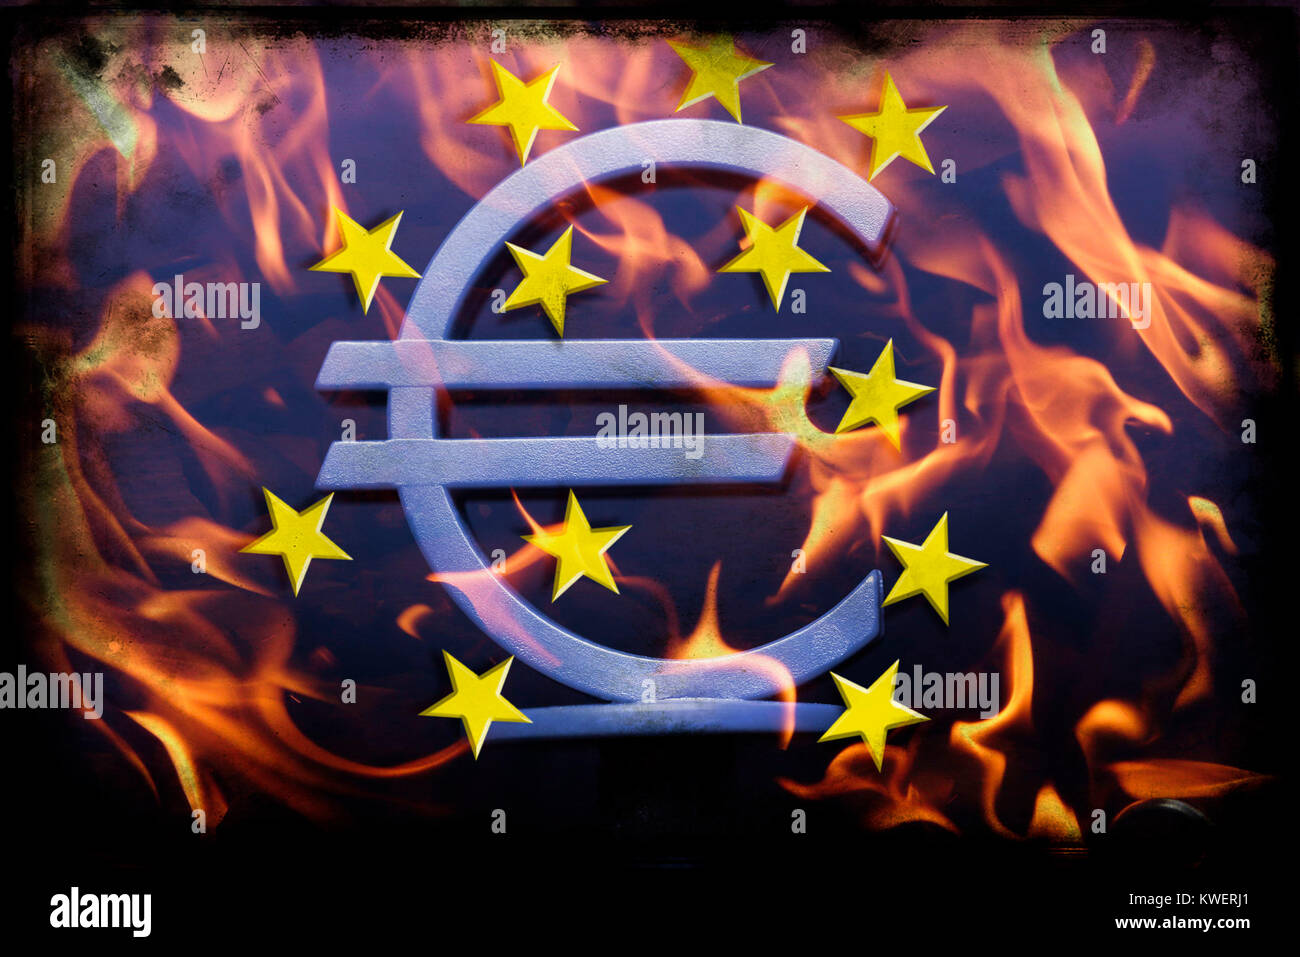 Eurosigns EZB en llamas, la compra de préstamos estatales por el EZB, EZB-Eurozeichen en Flammen, Ankauf von Staatsanleihen durch die EZB Foto de stock